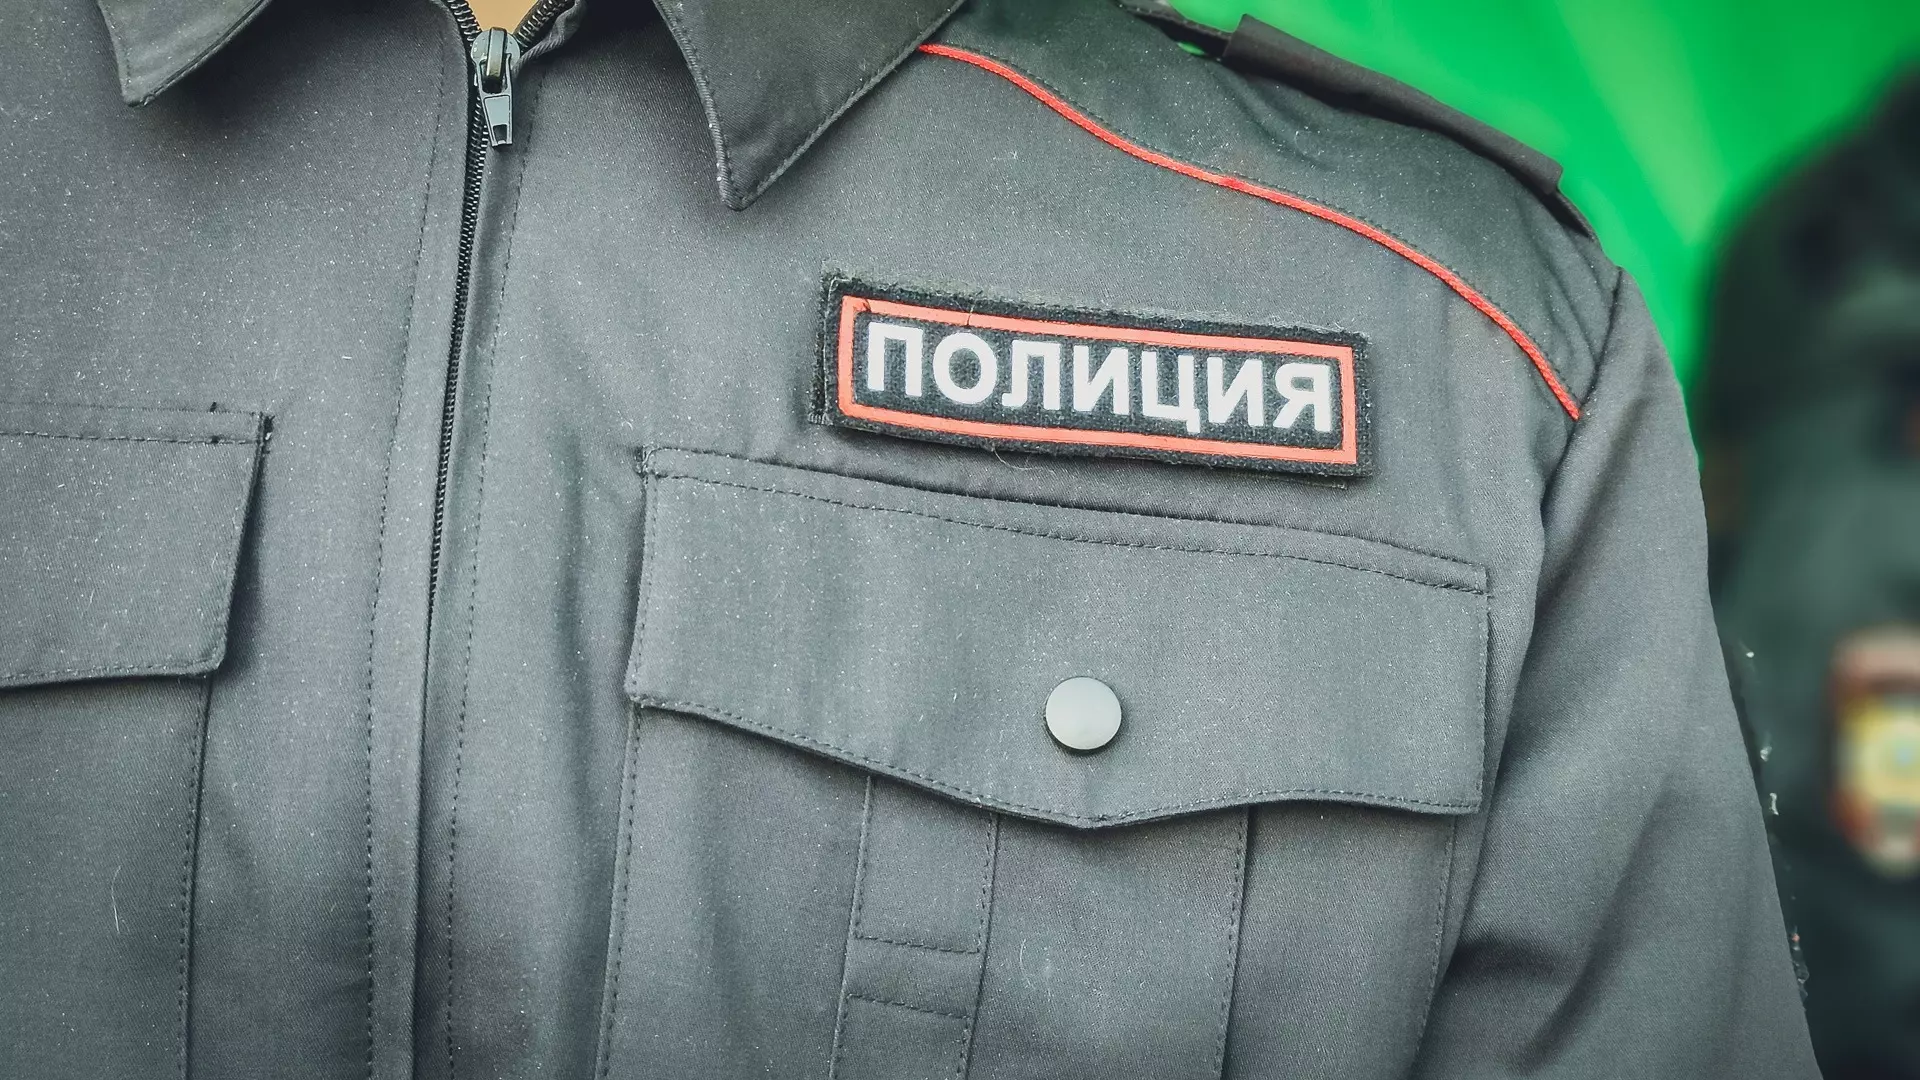 Осужденным за подброс наркотиков нижегородцу экс-полицейским сократили сроки